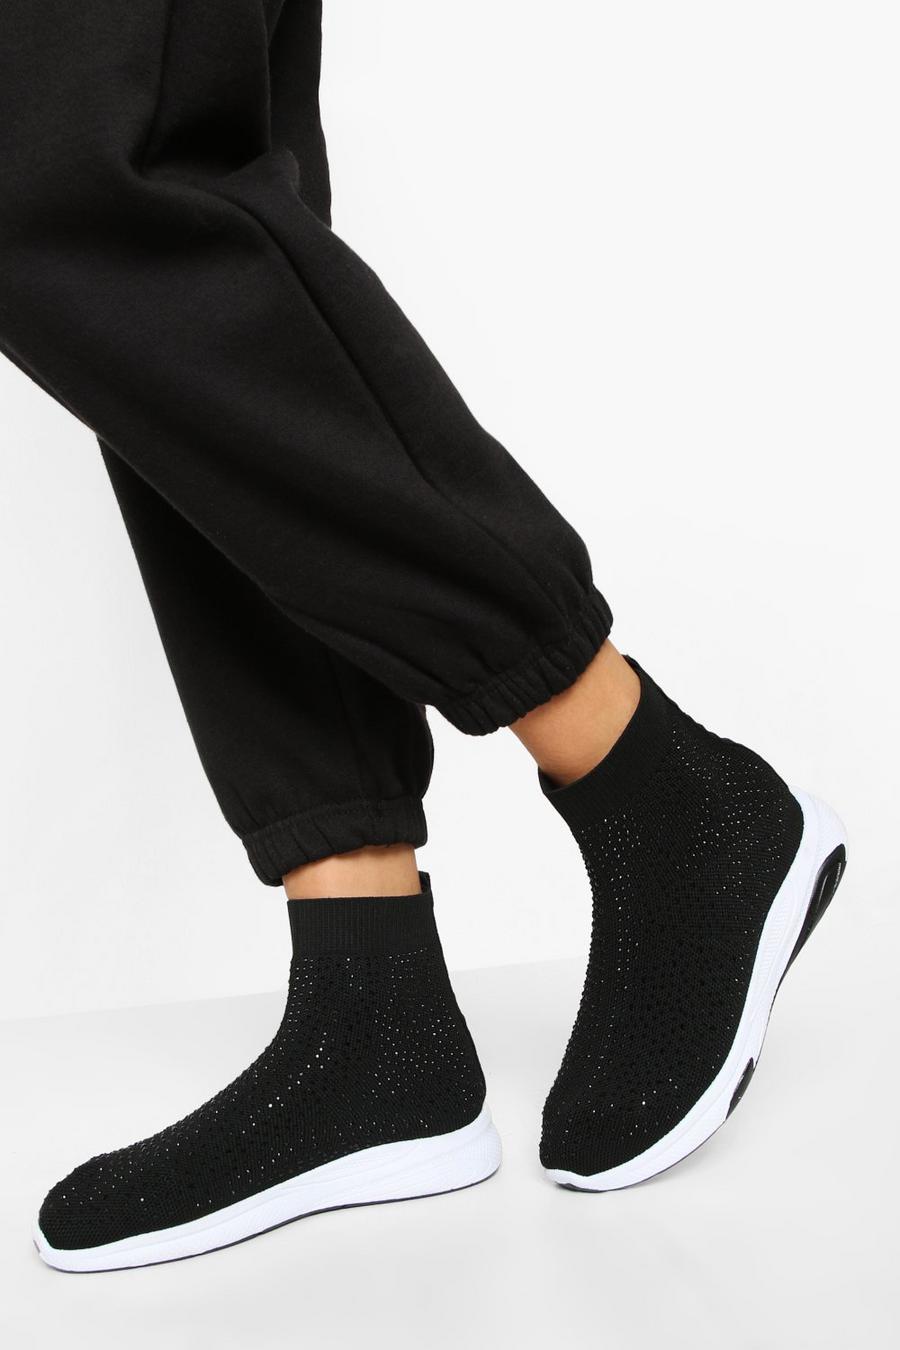 Baskets chaussettes à strass, Black noir